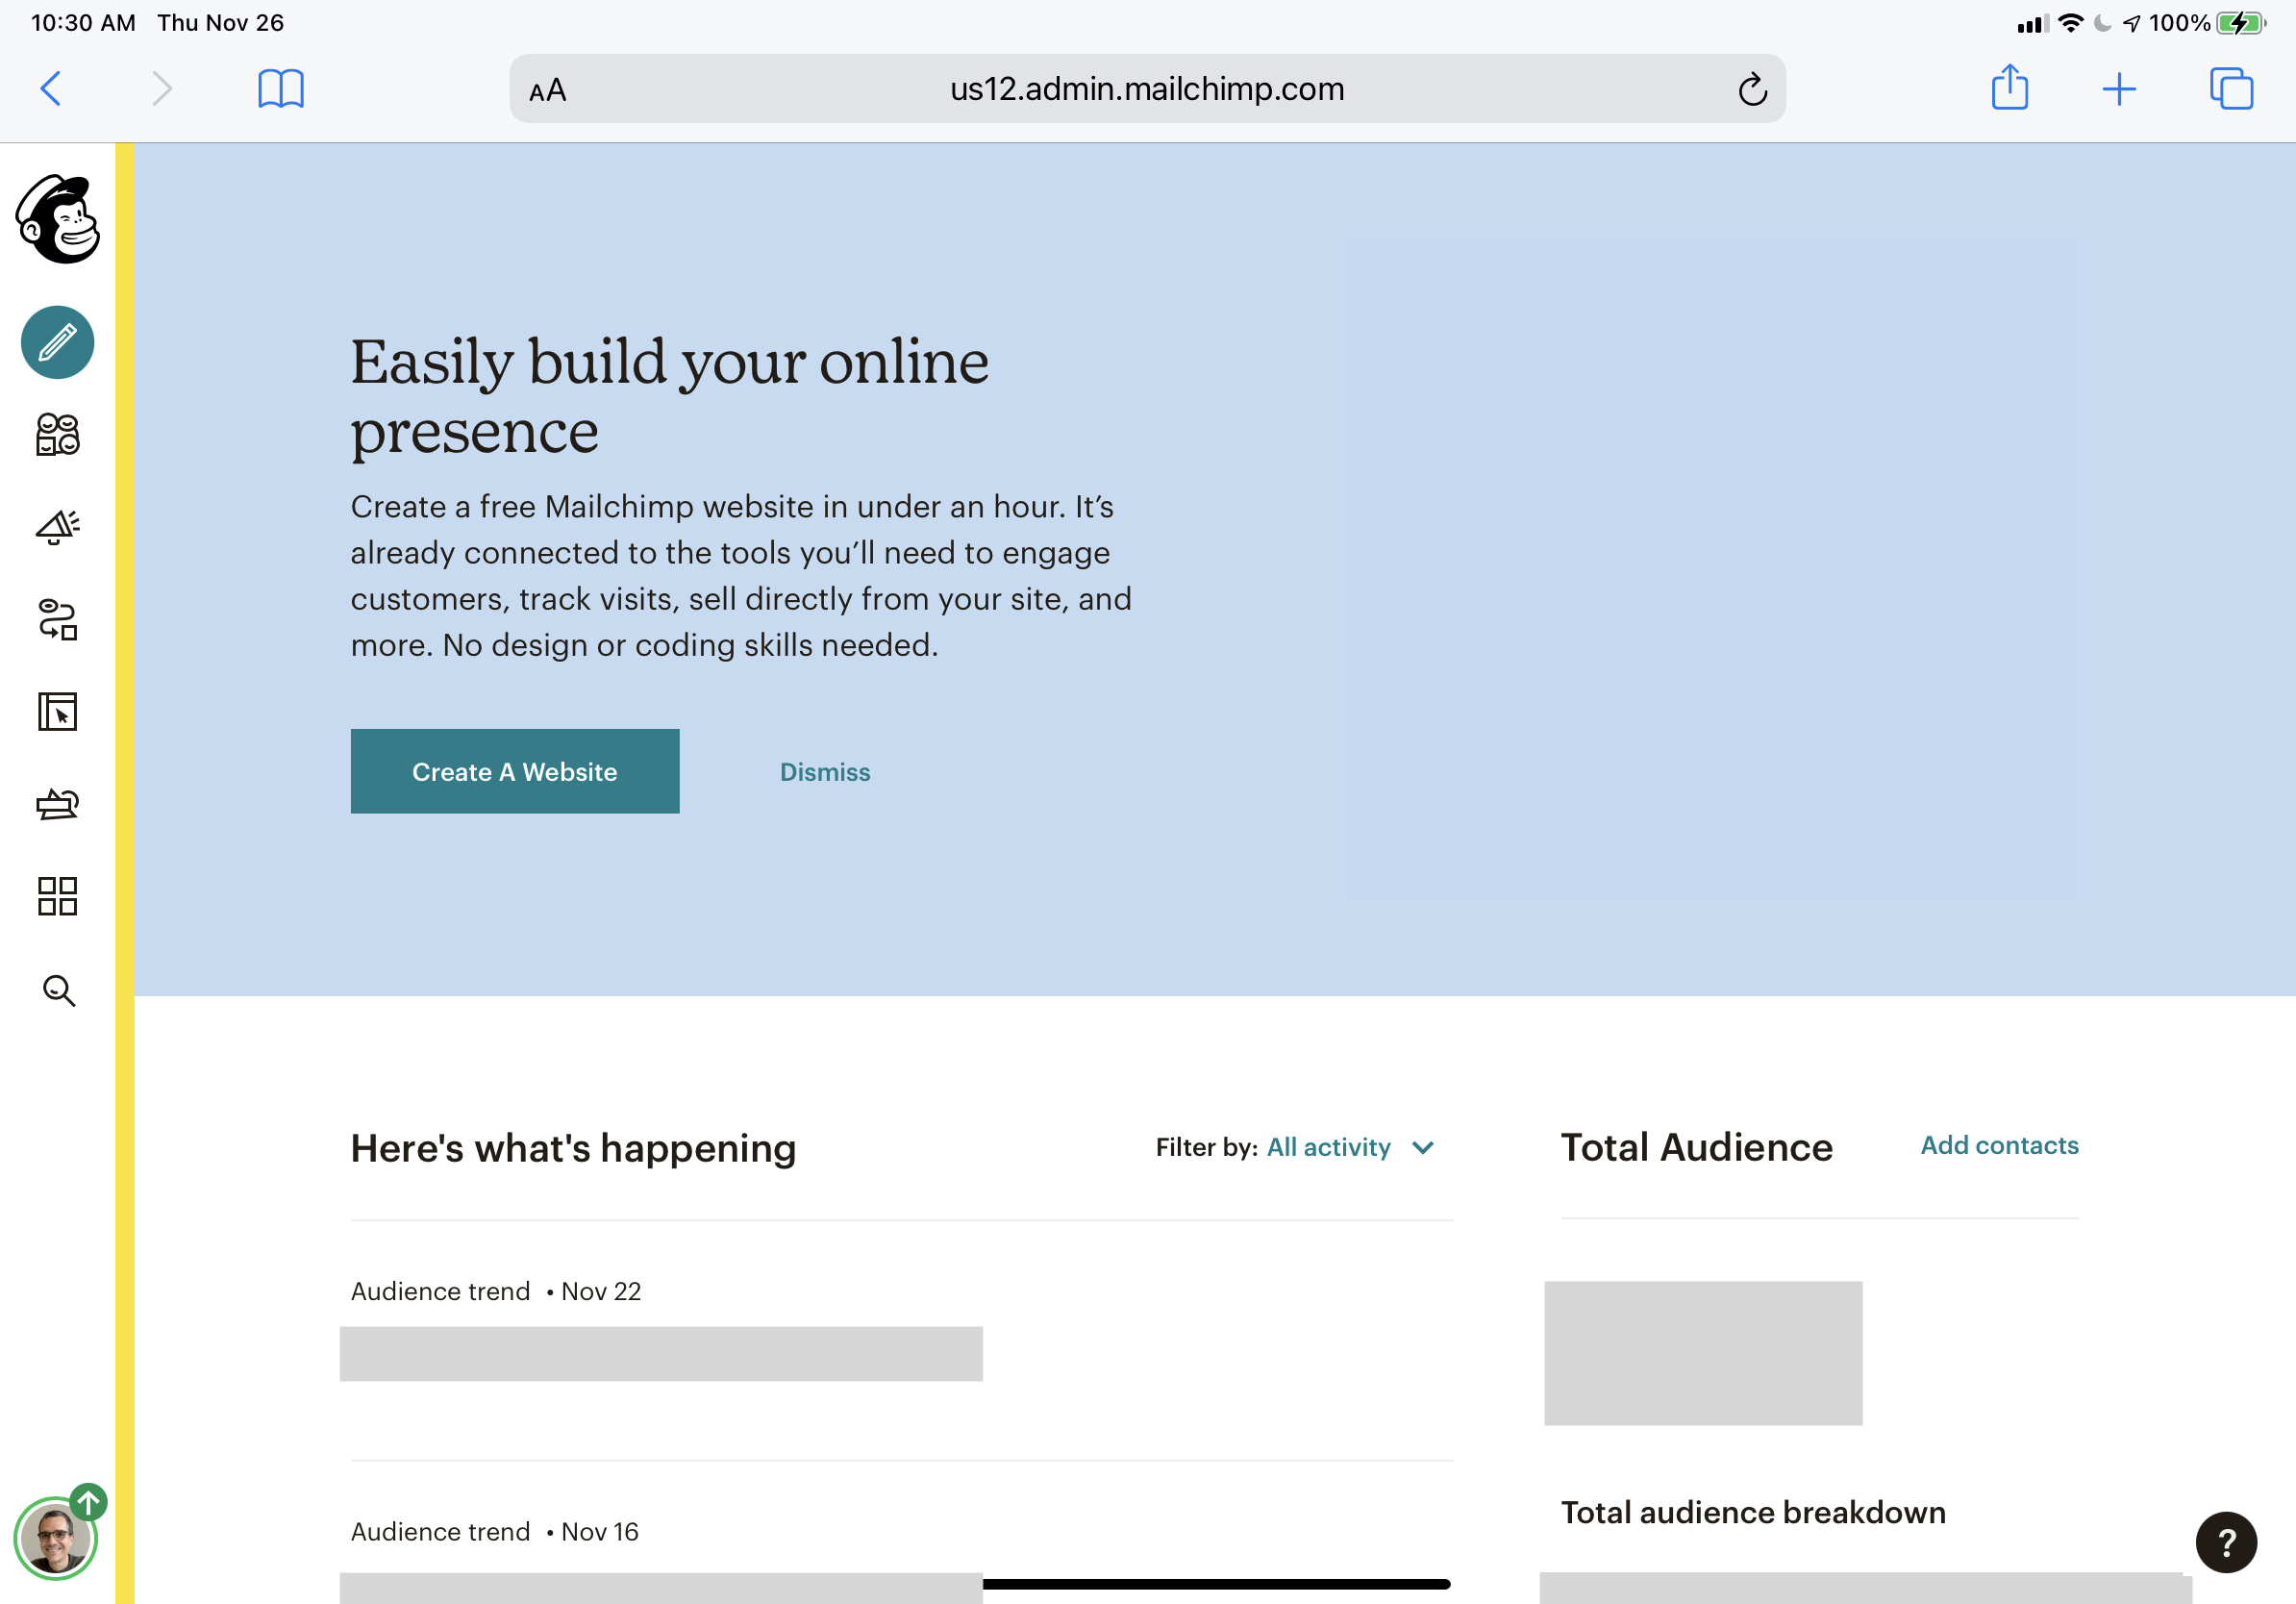 Mailchimp's product website navigation bar